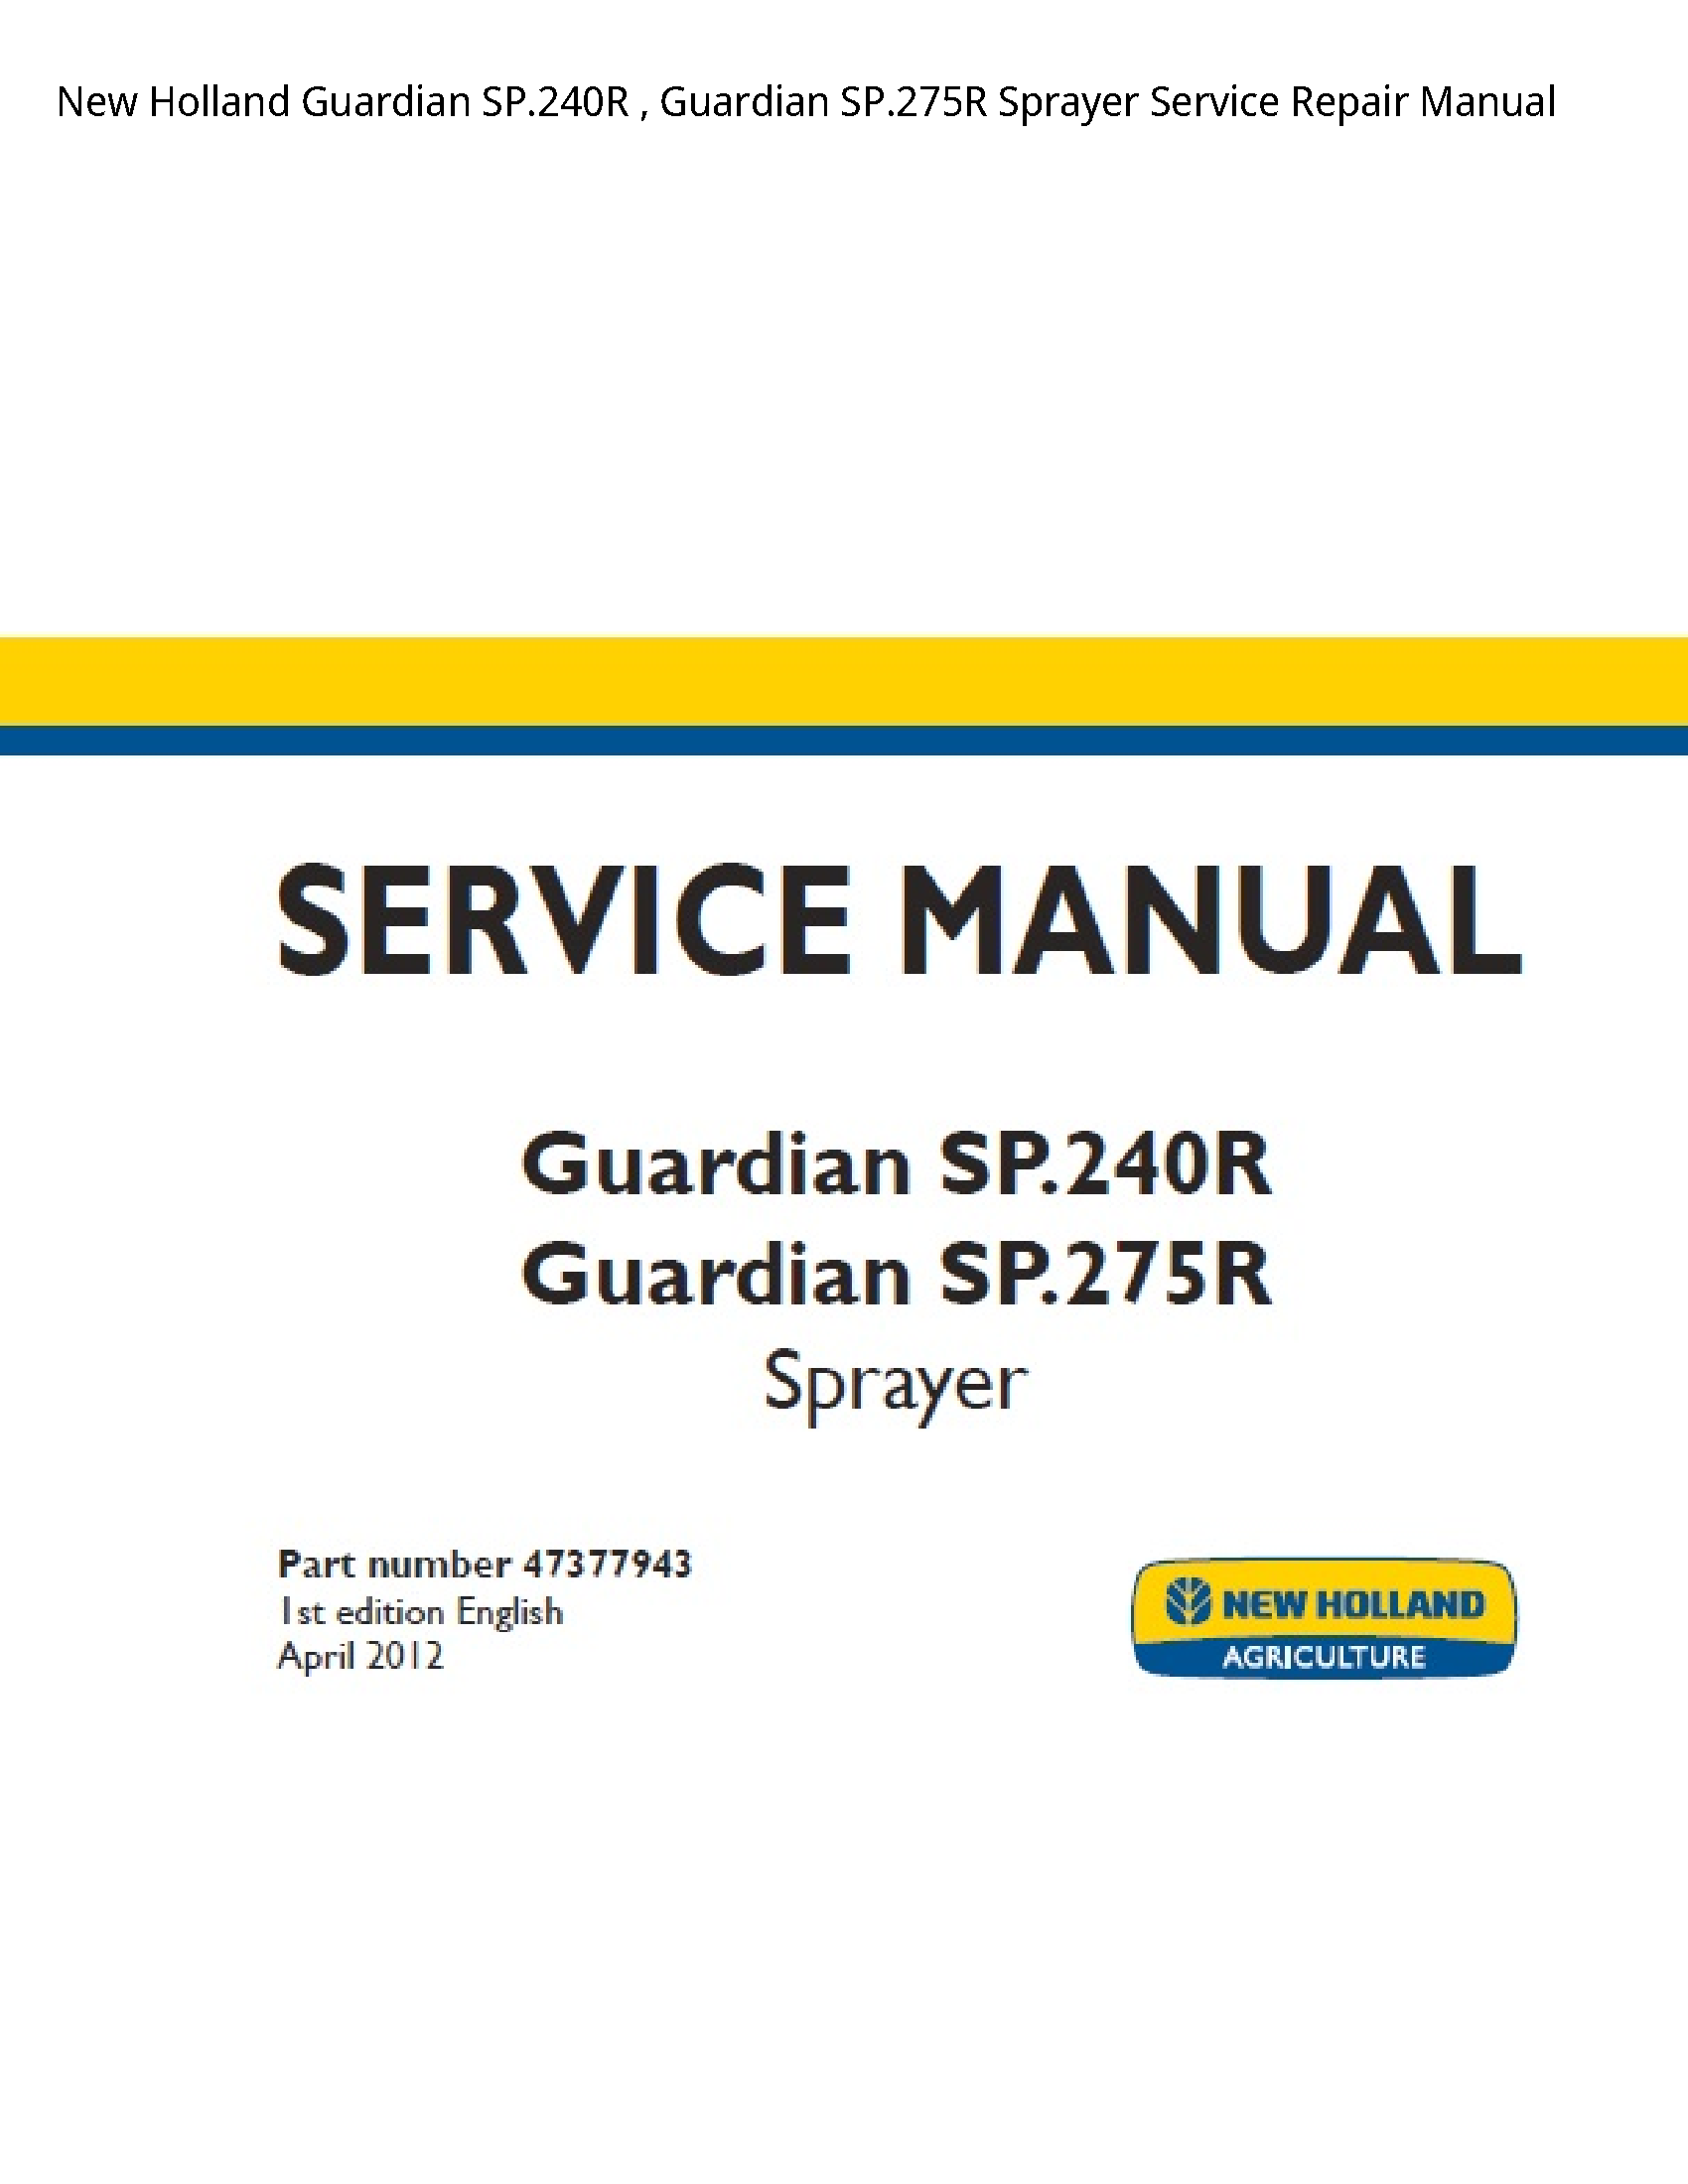 New Holland SP.240R Guardian Guardian Sprayer manual